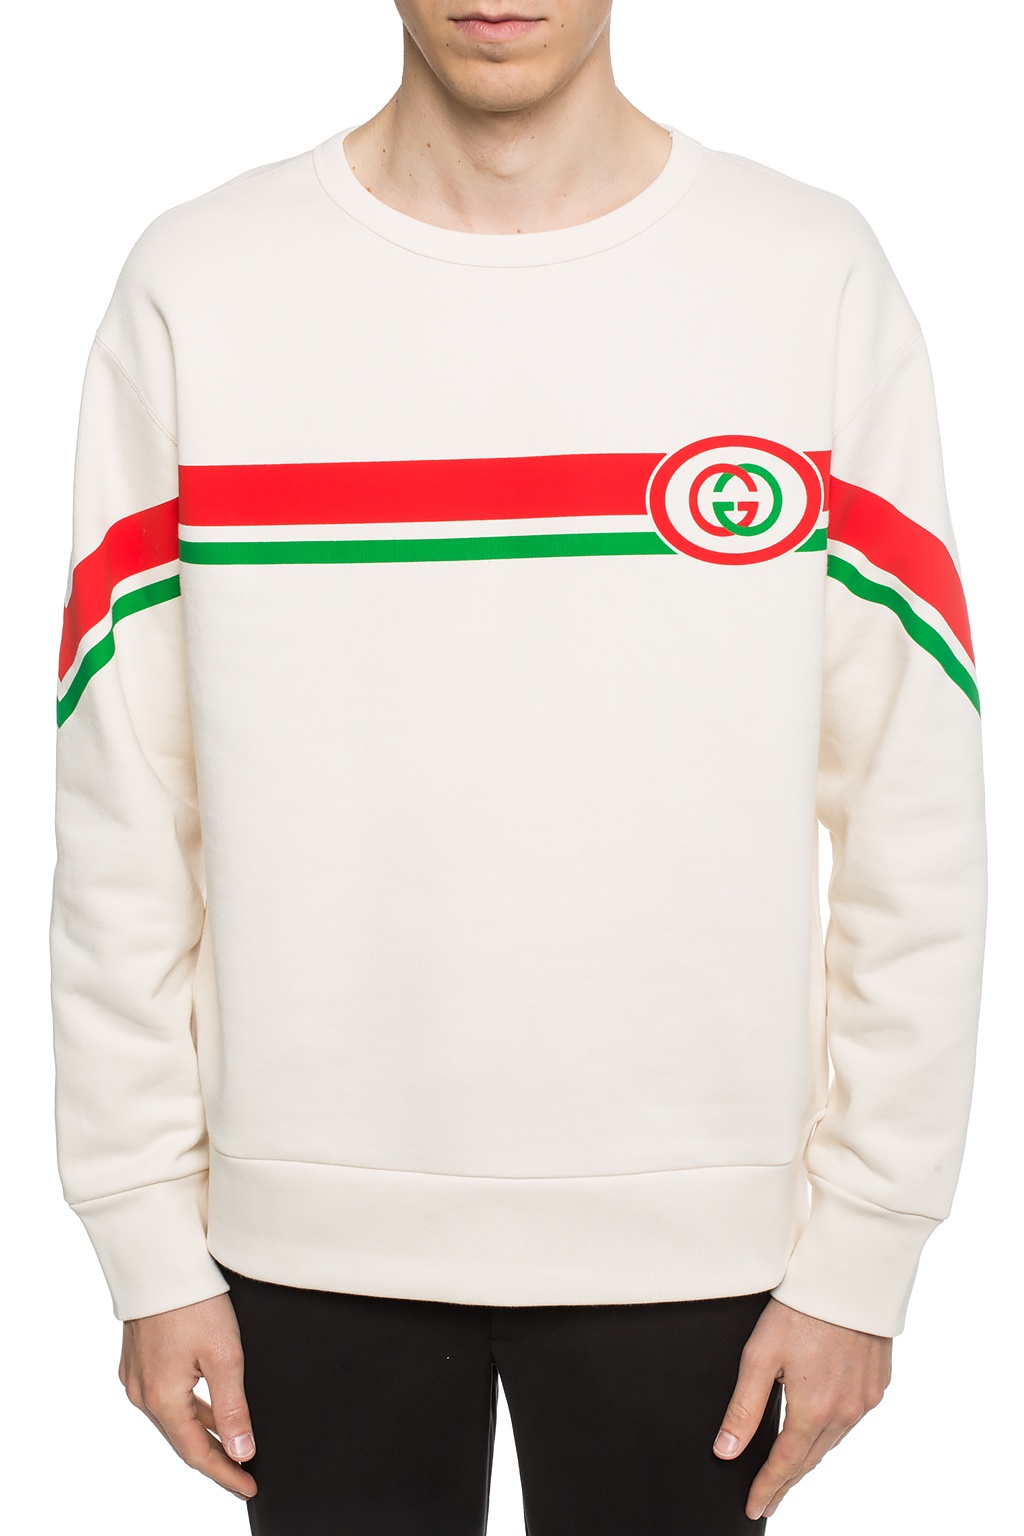 Gucci Interlocking G sweatshirt | Men's Clothing | Vitkac